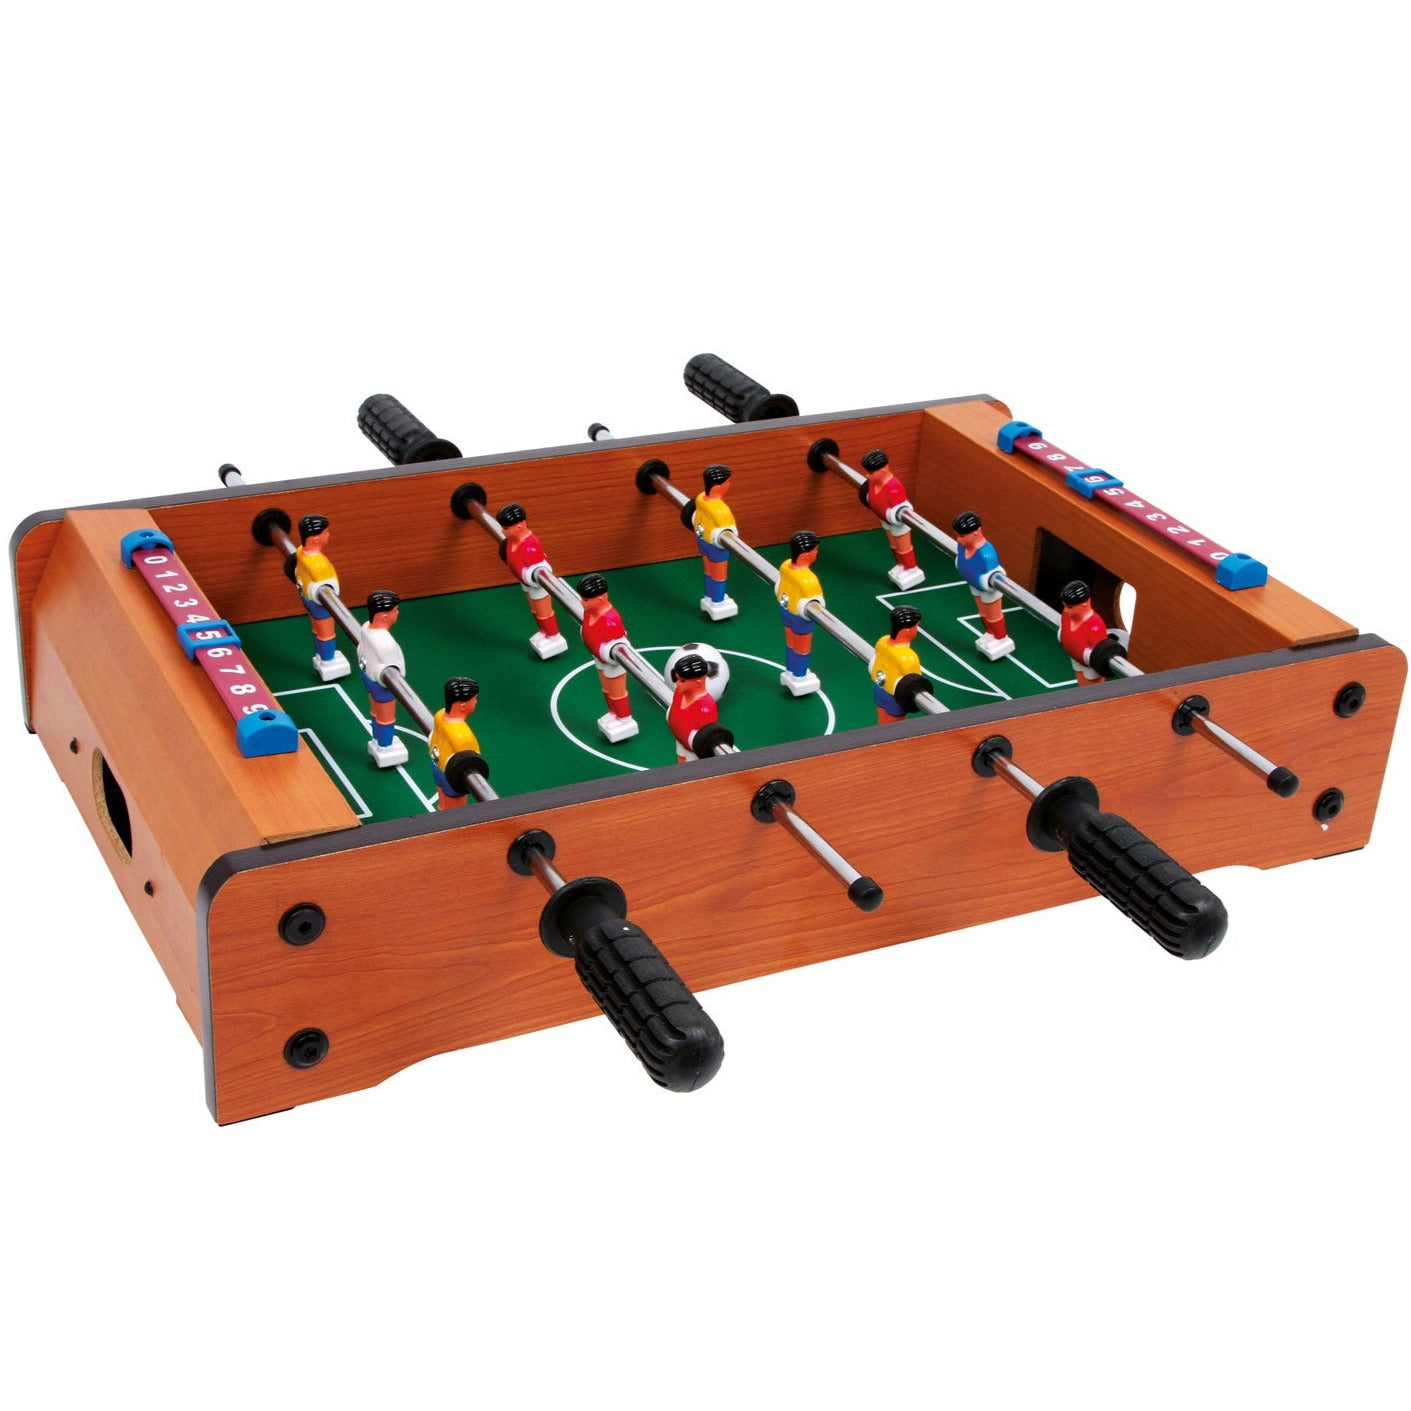 Petit pied: mini table de table de football jeu et plaisir